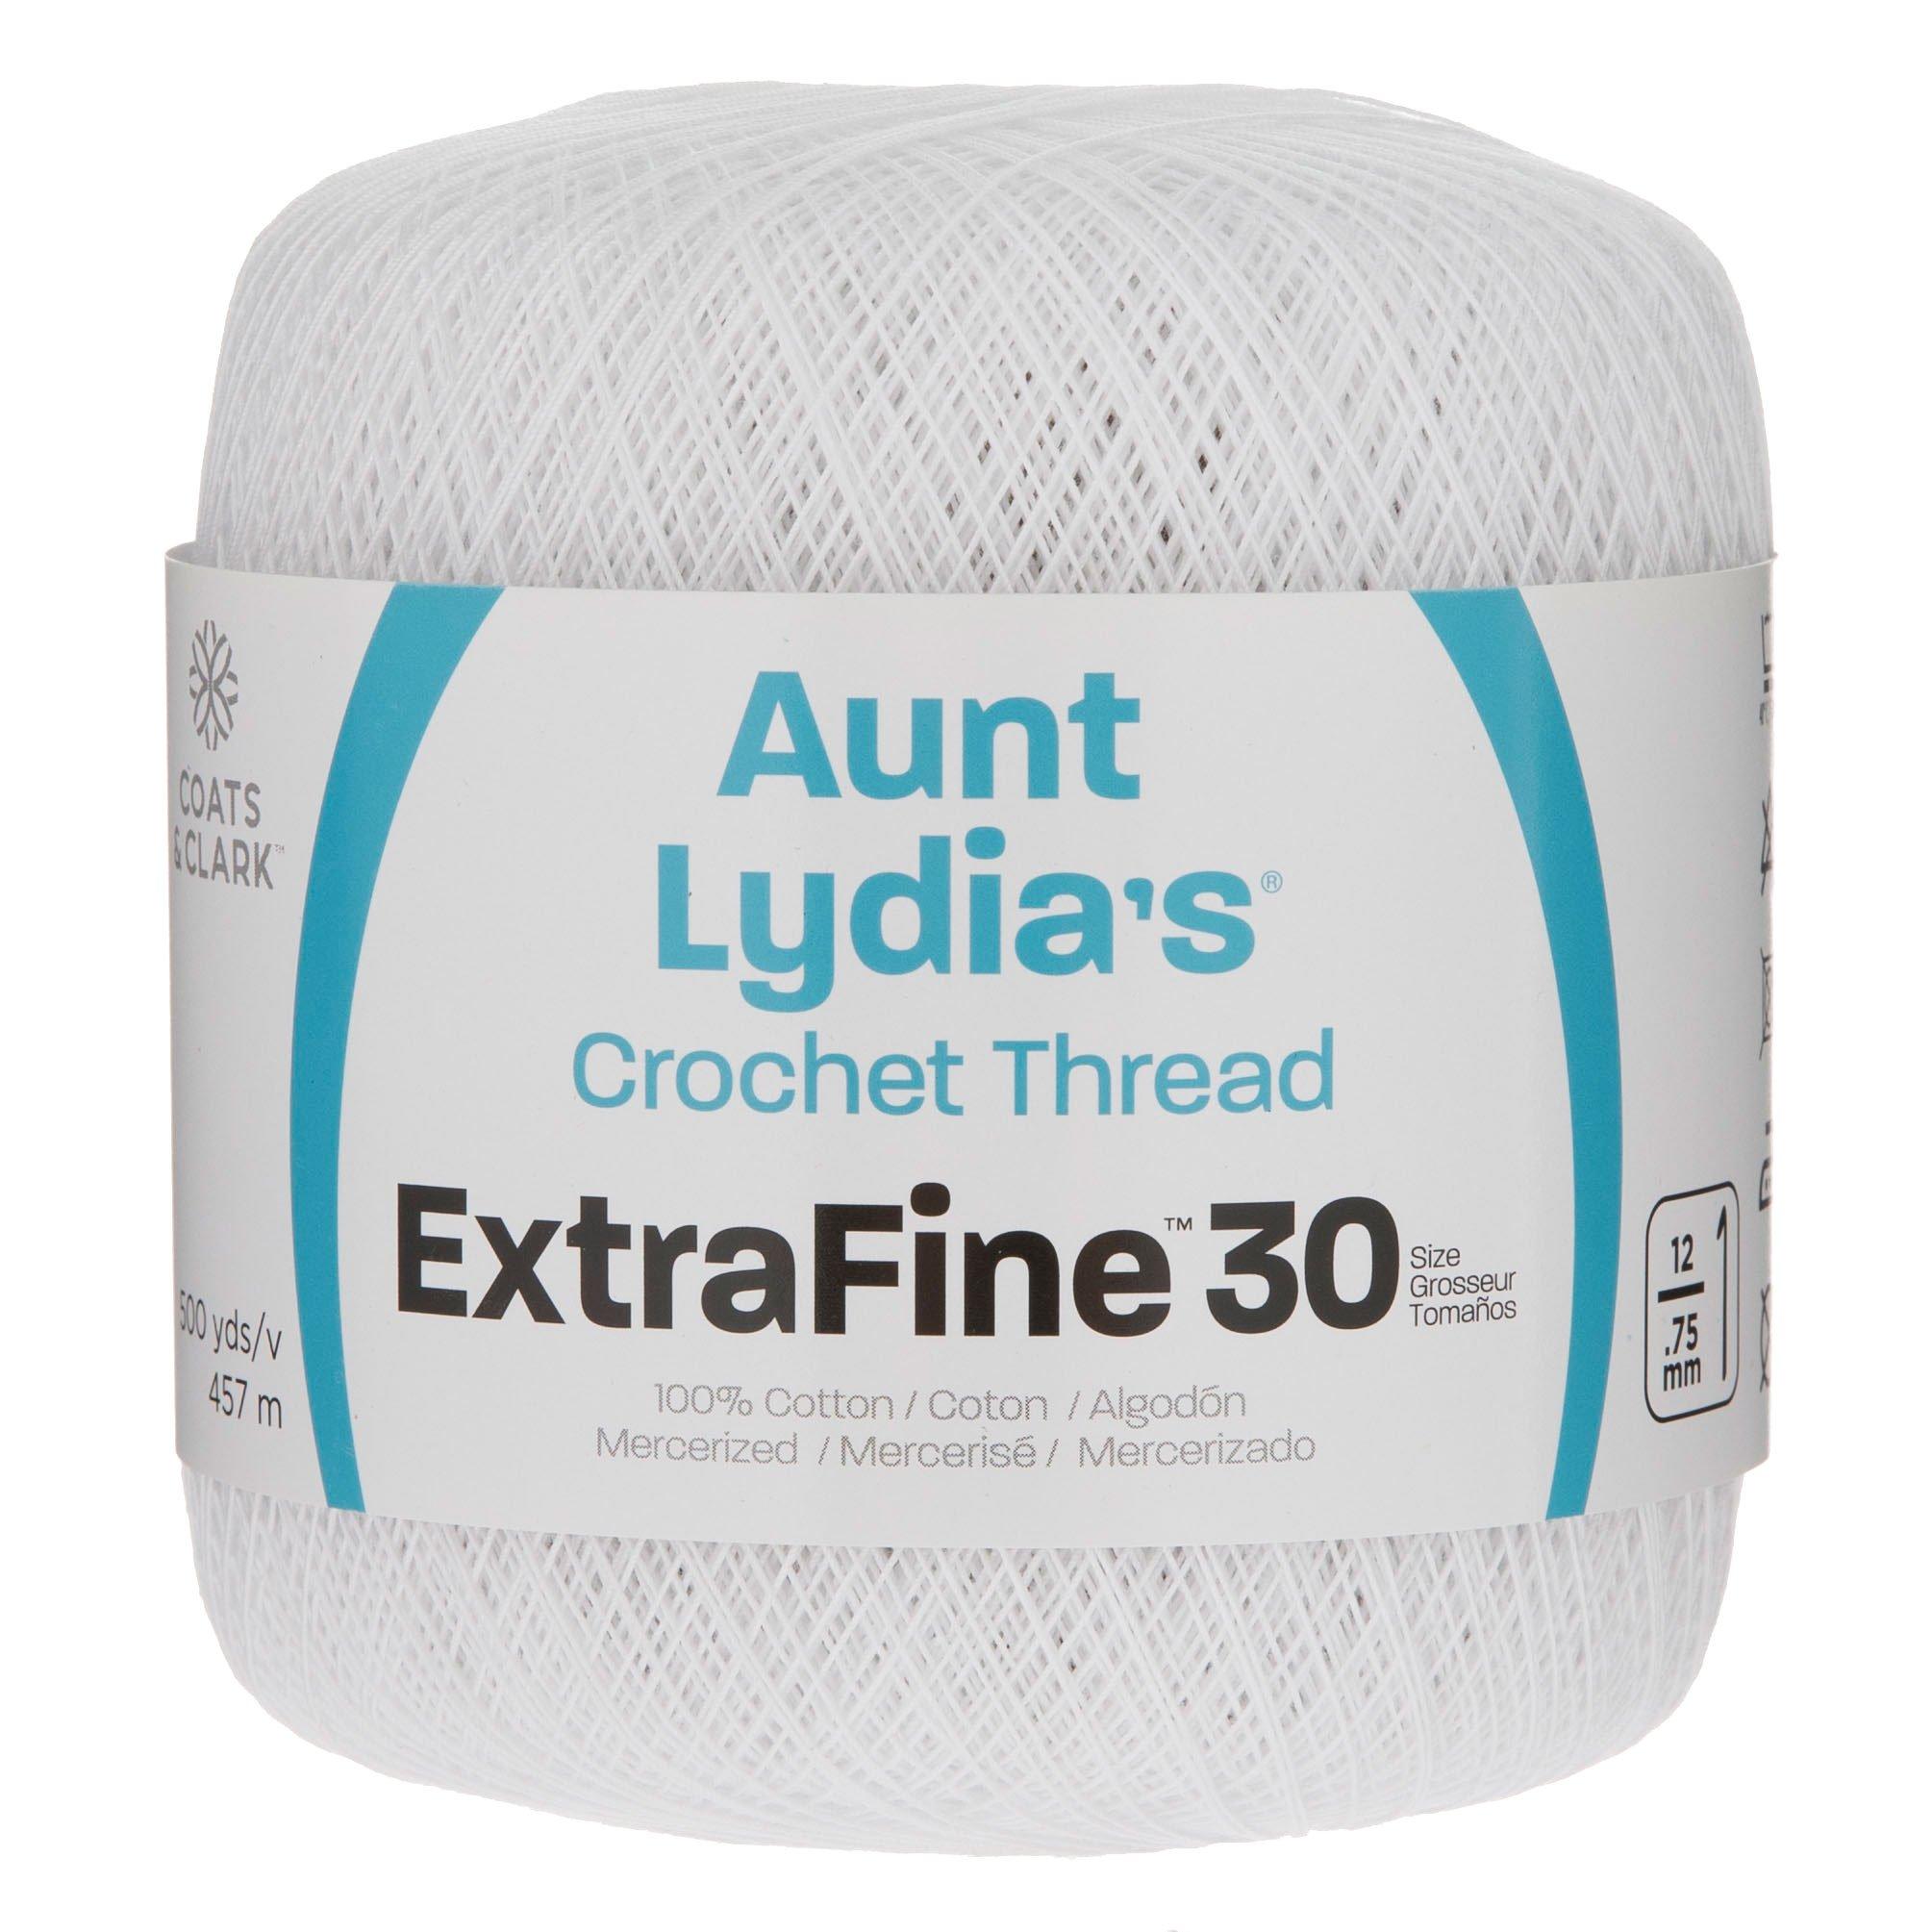 Aunt Lydia's Classic 10, 2730-yd ball Crochet Thread